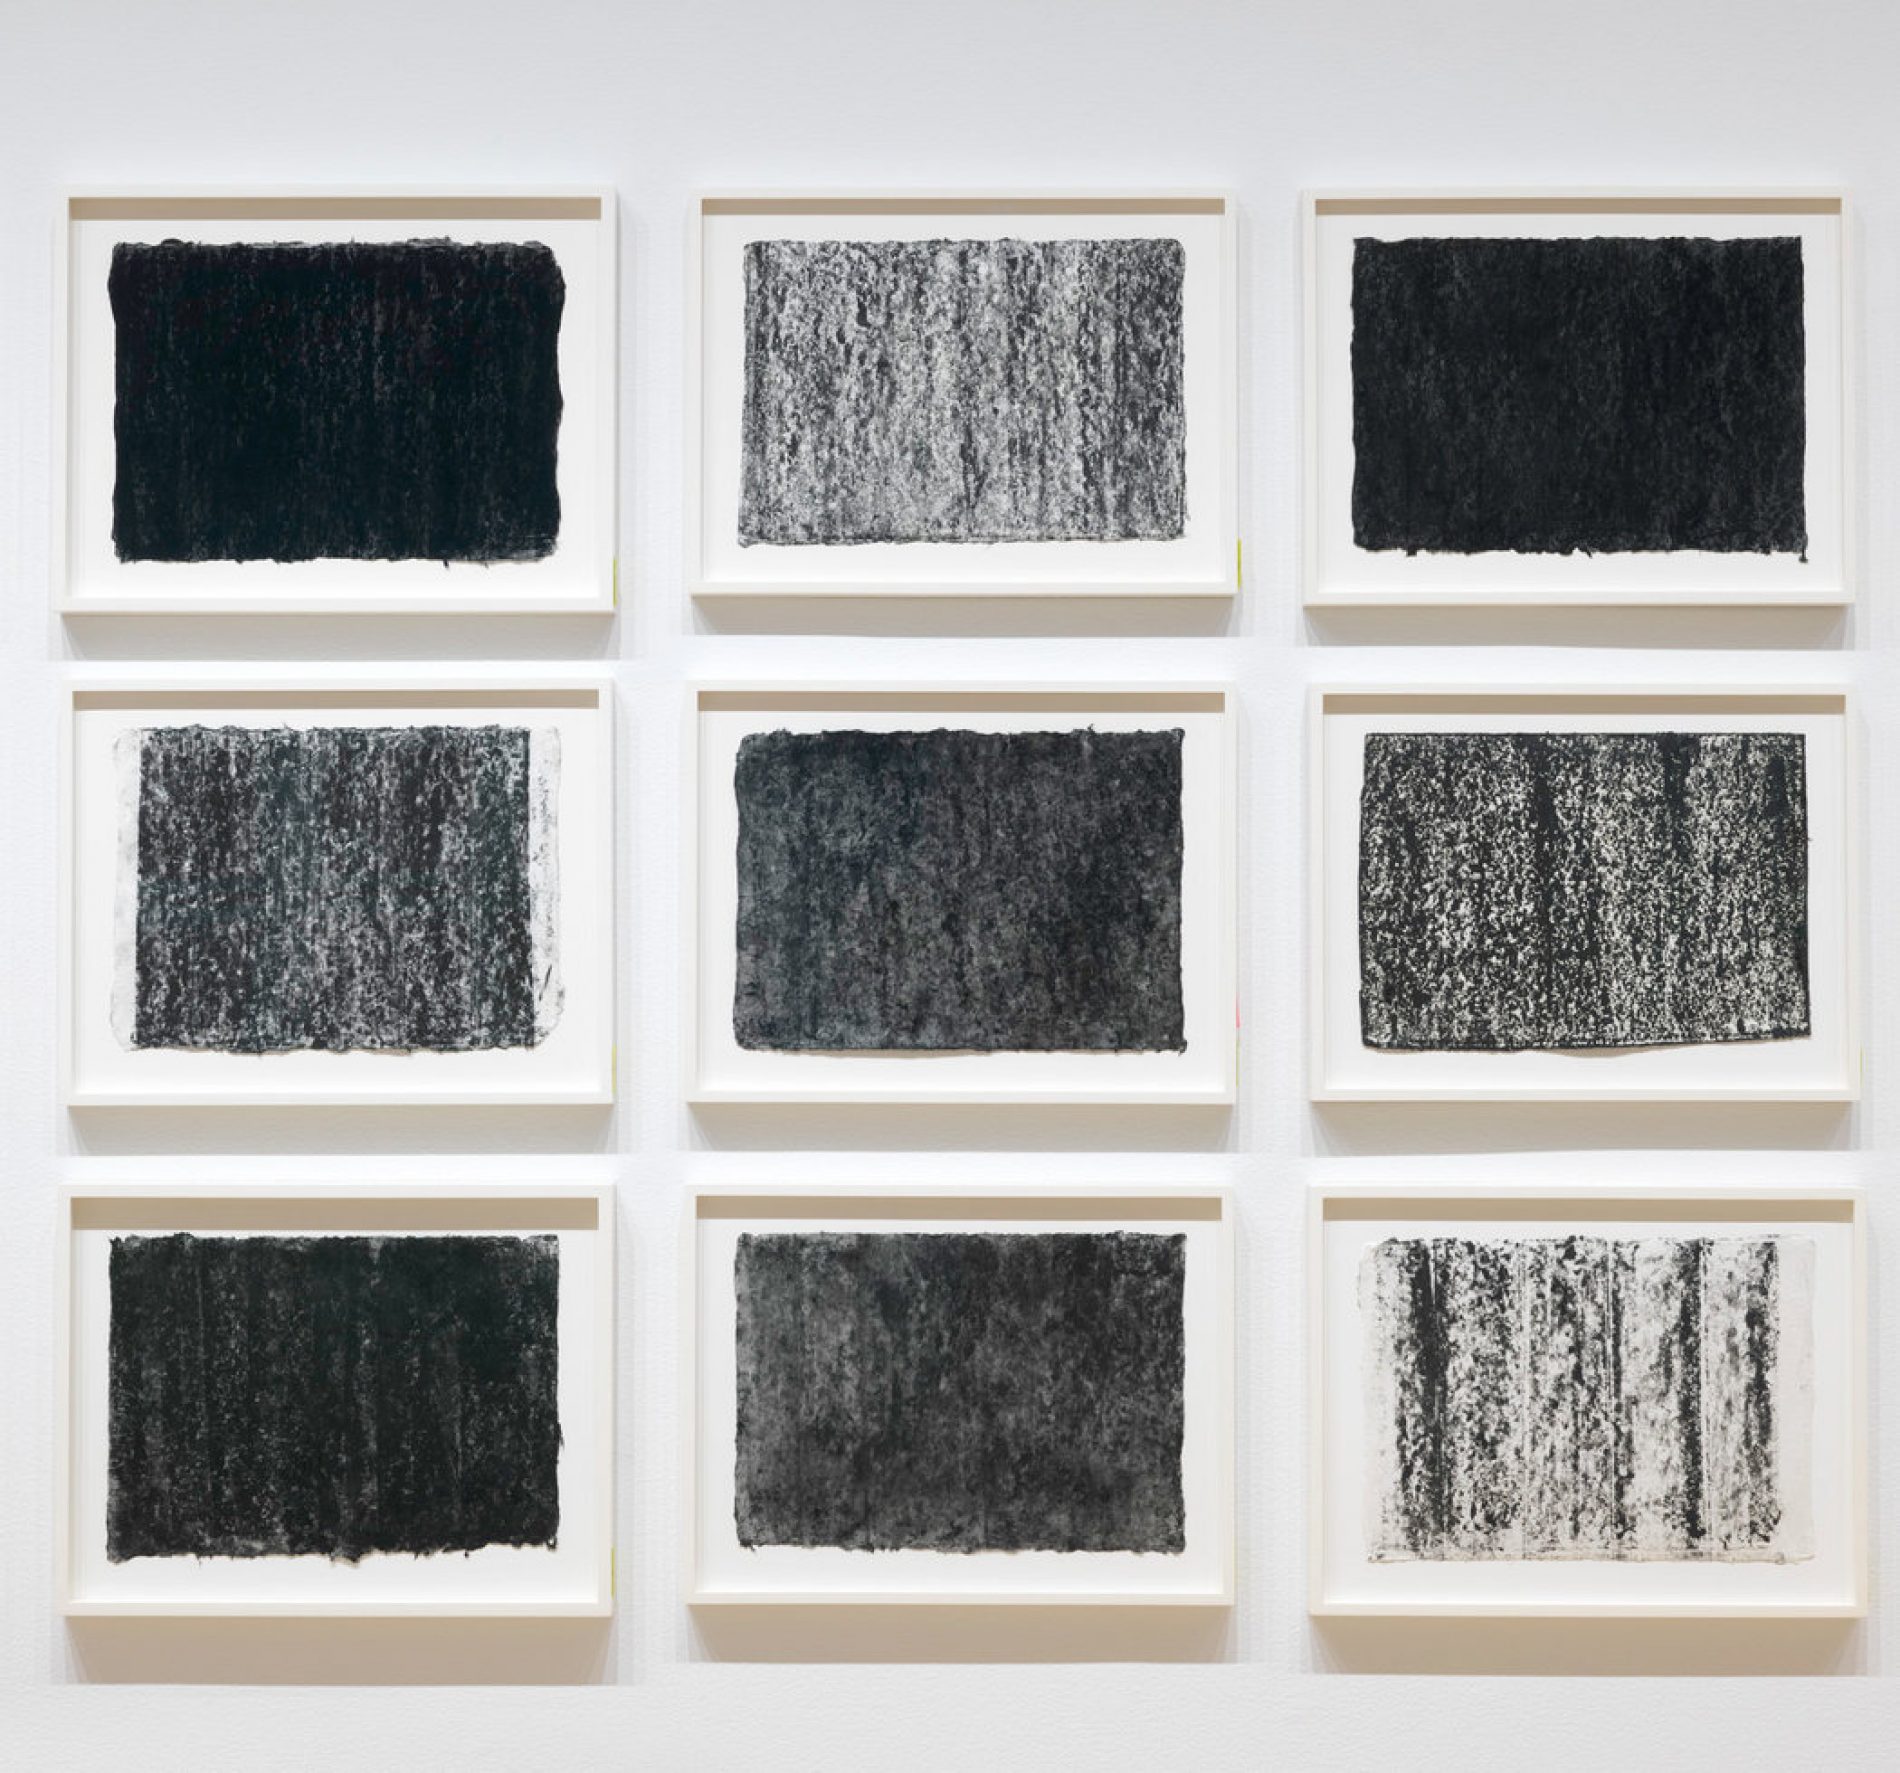 Richard Serra – Drawings 2015-2017